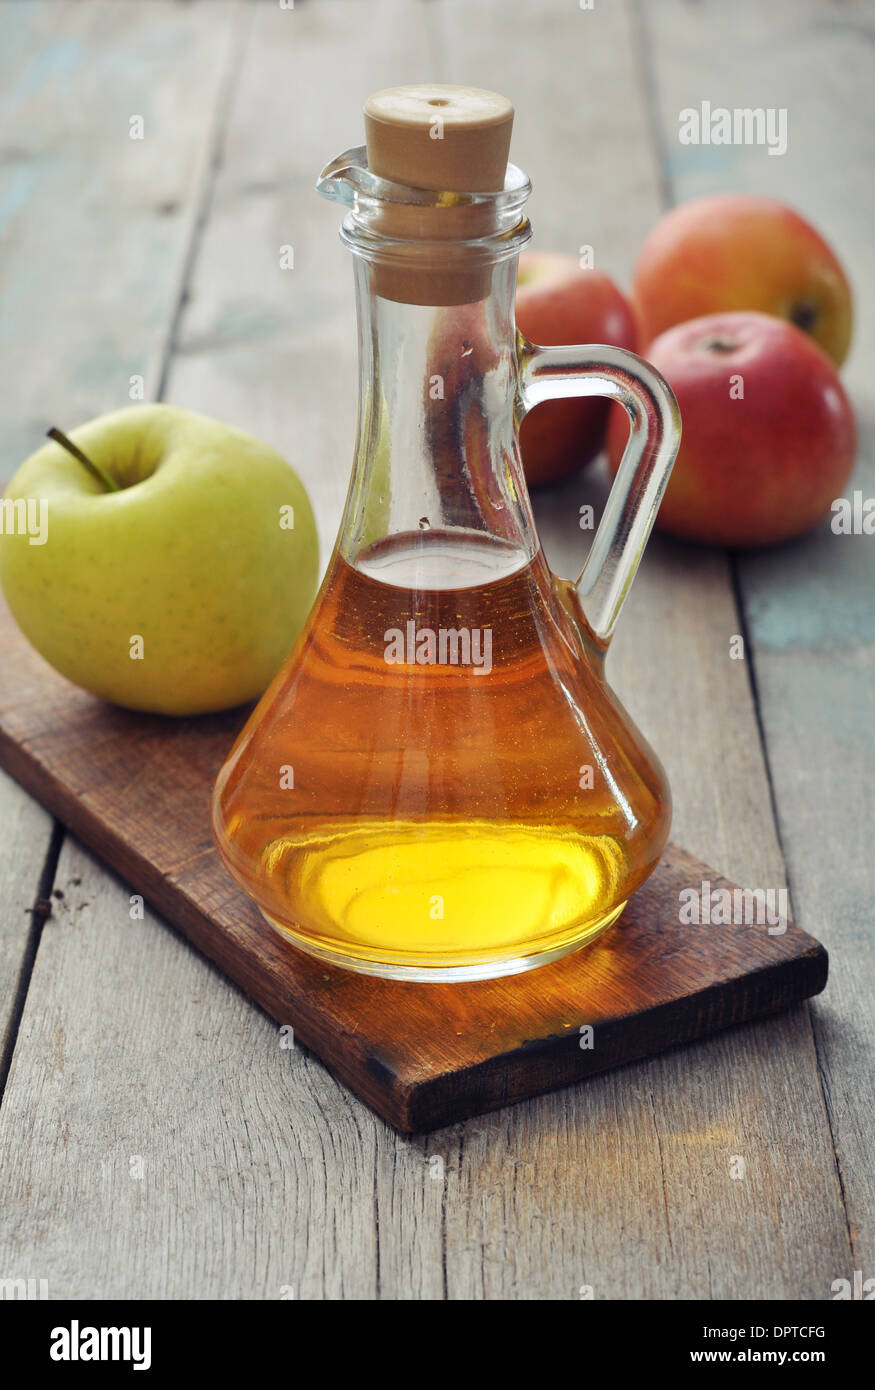 Apple cider vinegar in glass bottle and fresh apples Stock Photo